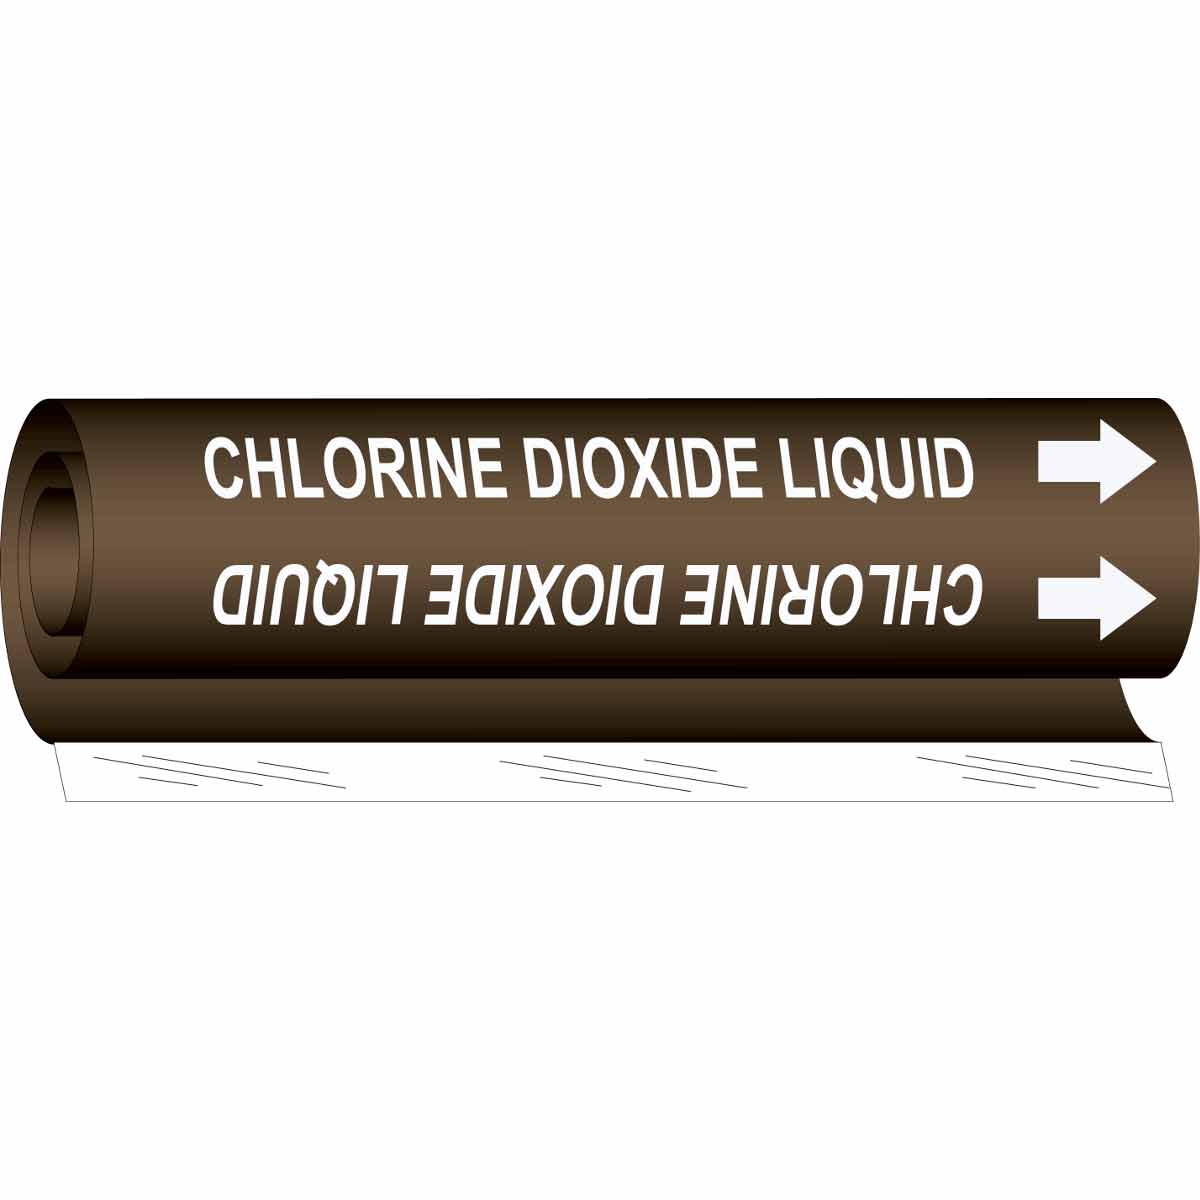 CHLORINE DIOXIDE LIQUID WHITE / BROWN